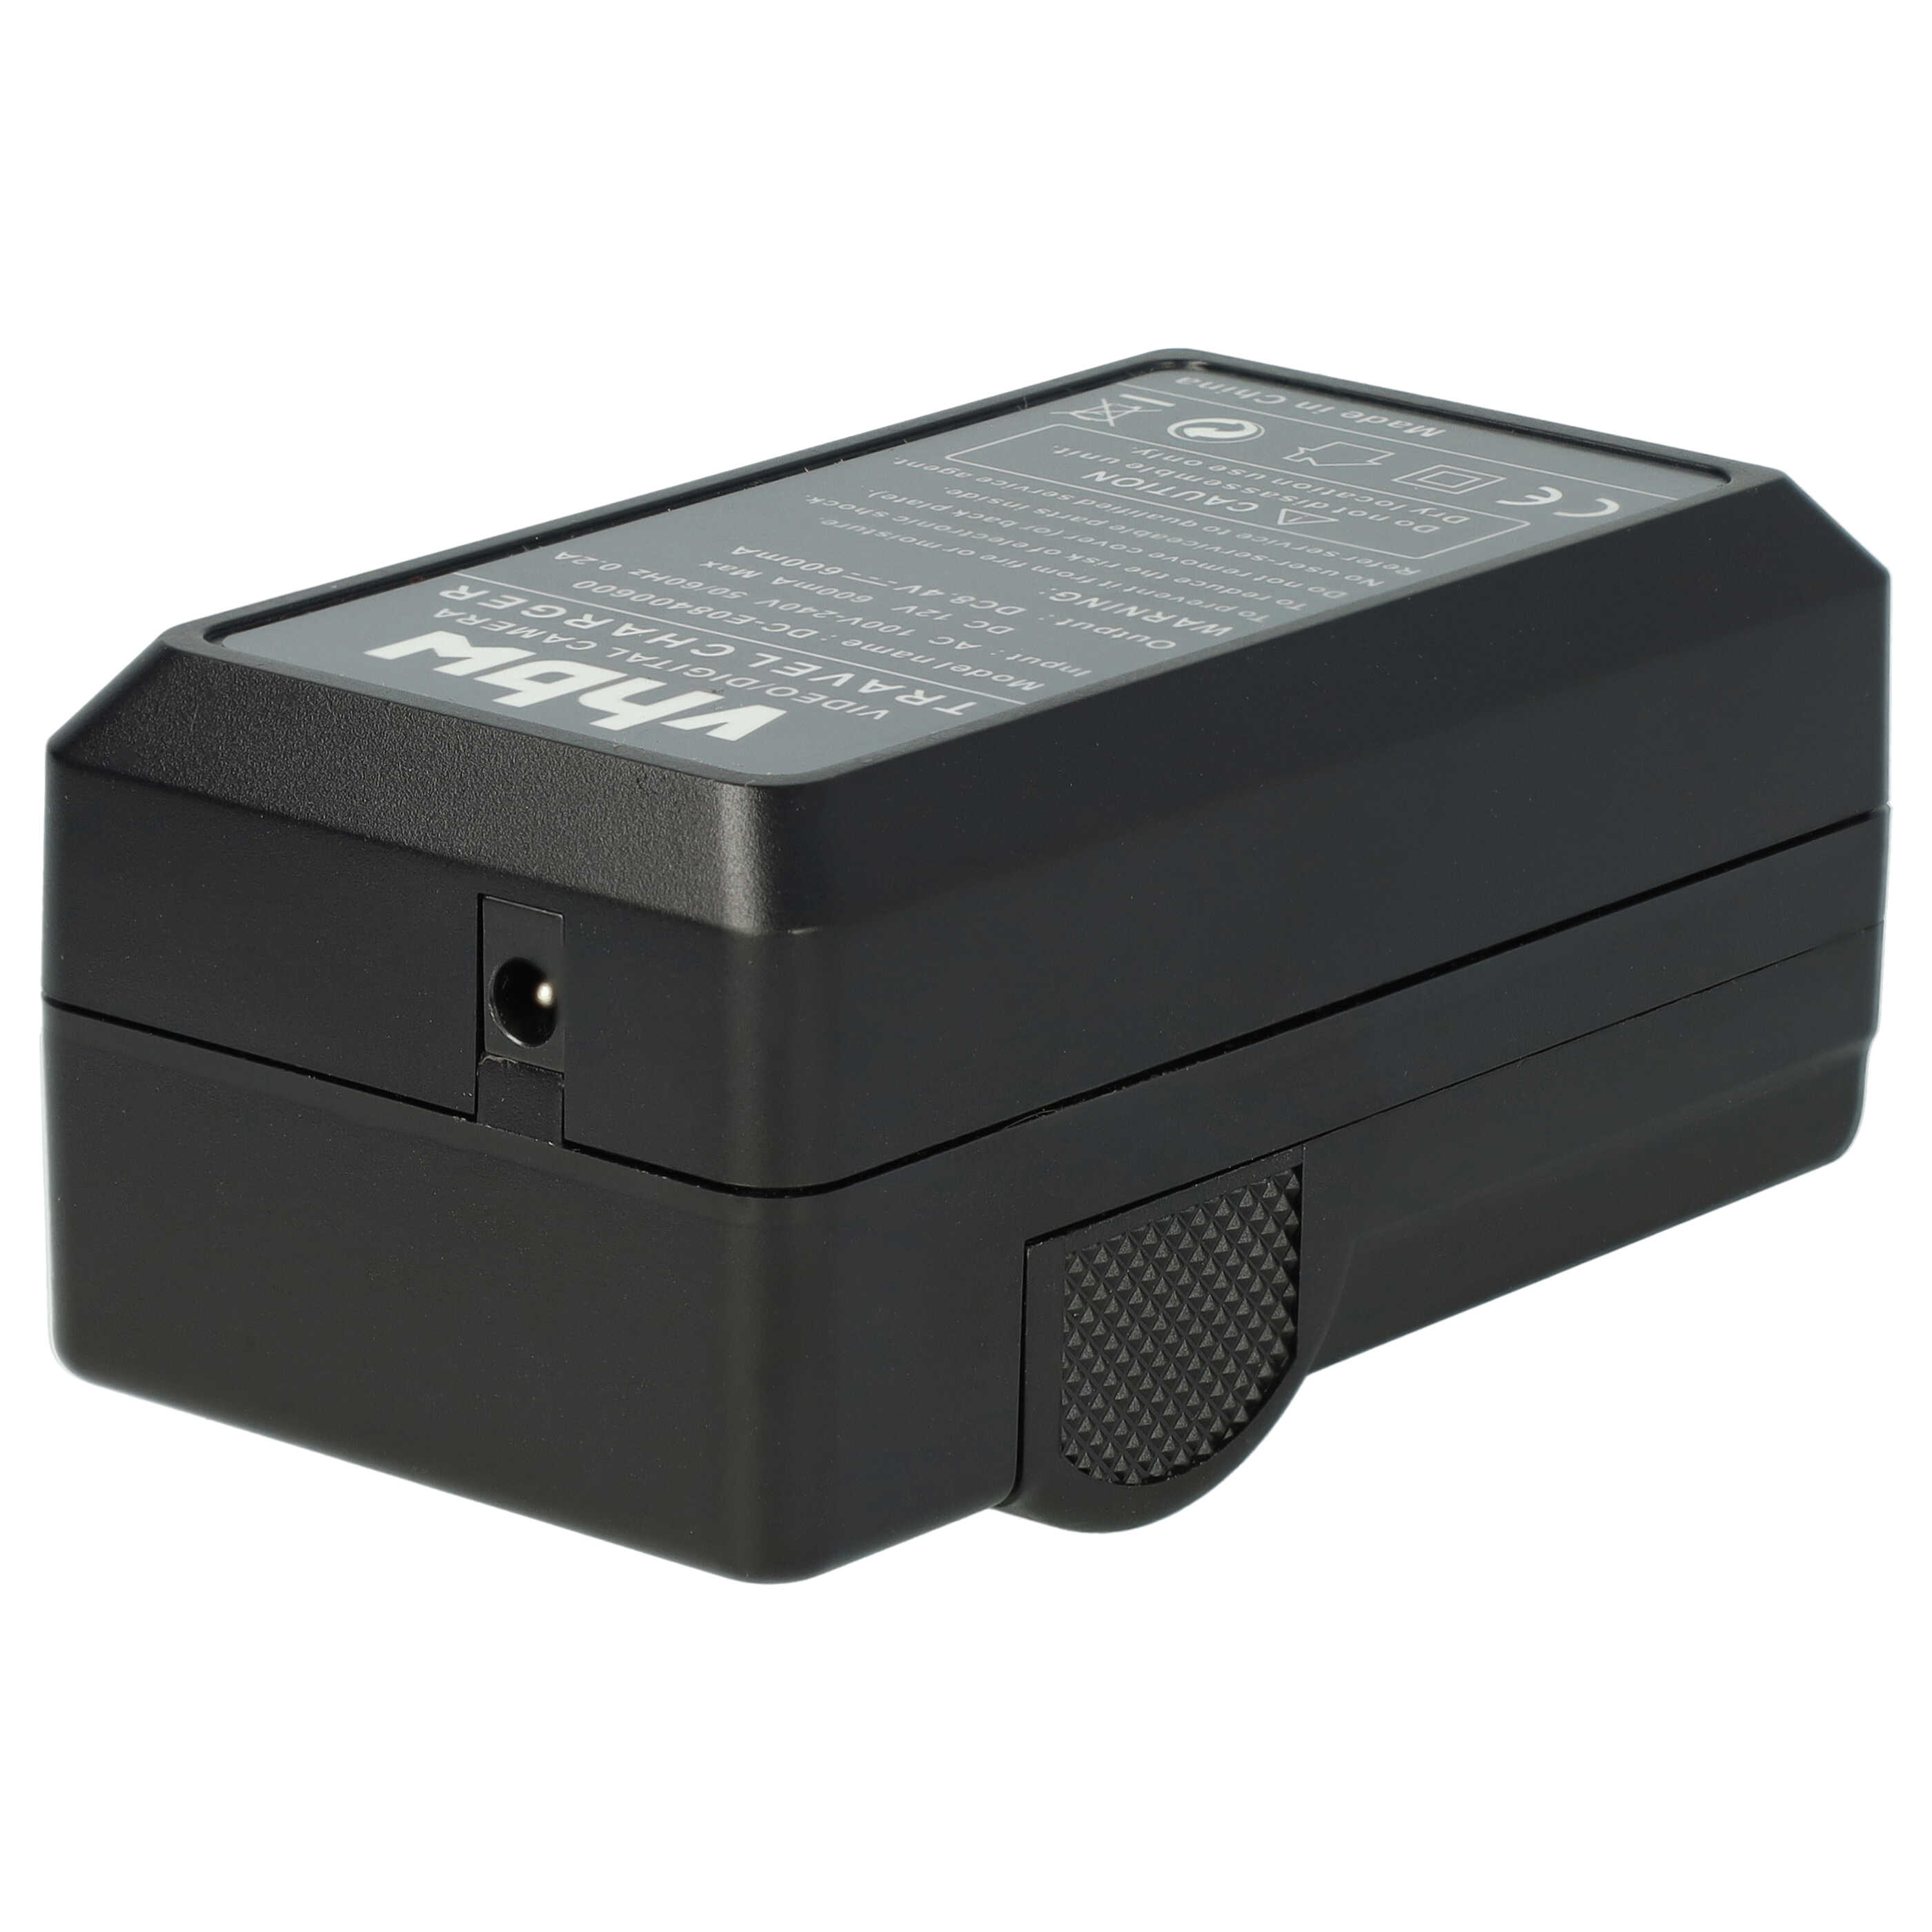 Caricabatterie + adattatore da auto per fotocamera Coolpix - 0,6A 8,4V 88,5cm